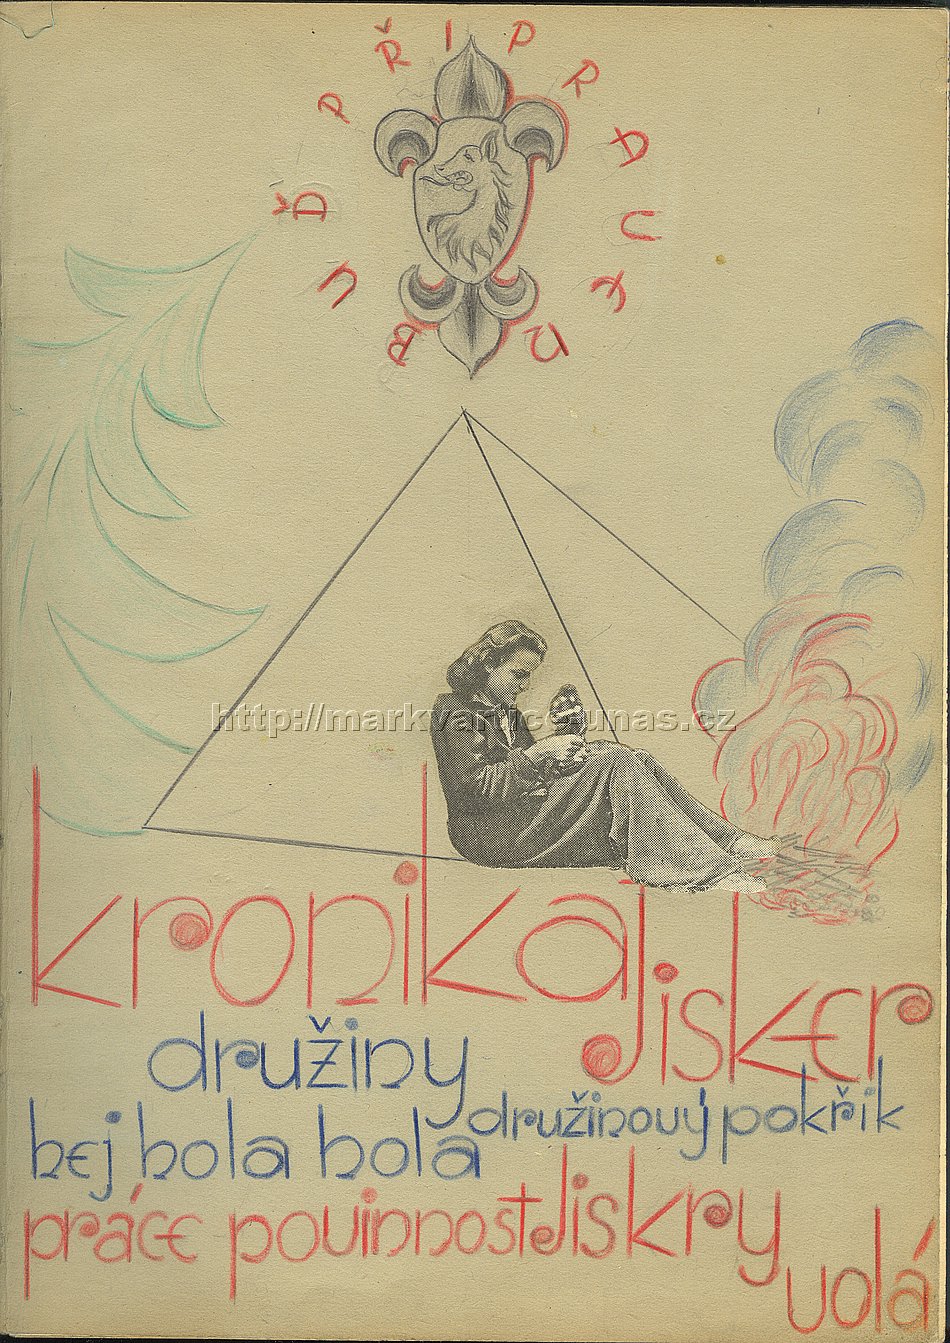 Skautská kronika
Markvartičtí skauti v letech 1946-1948